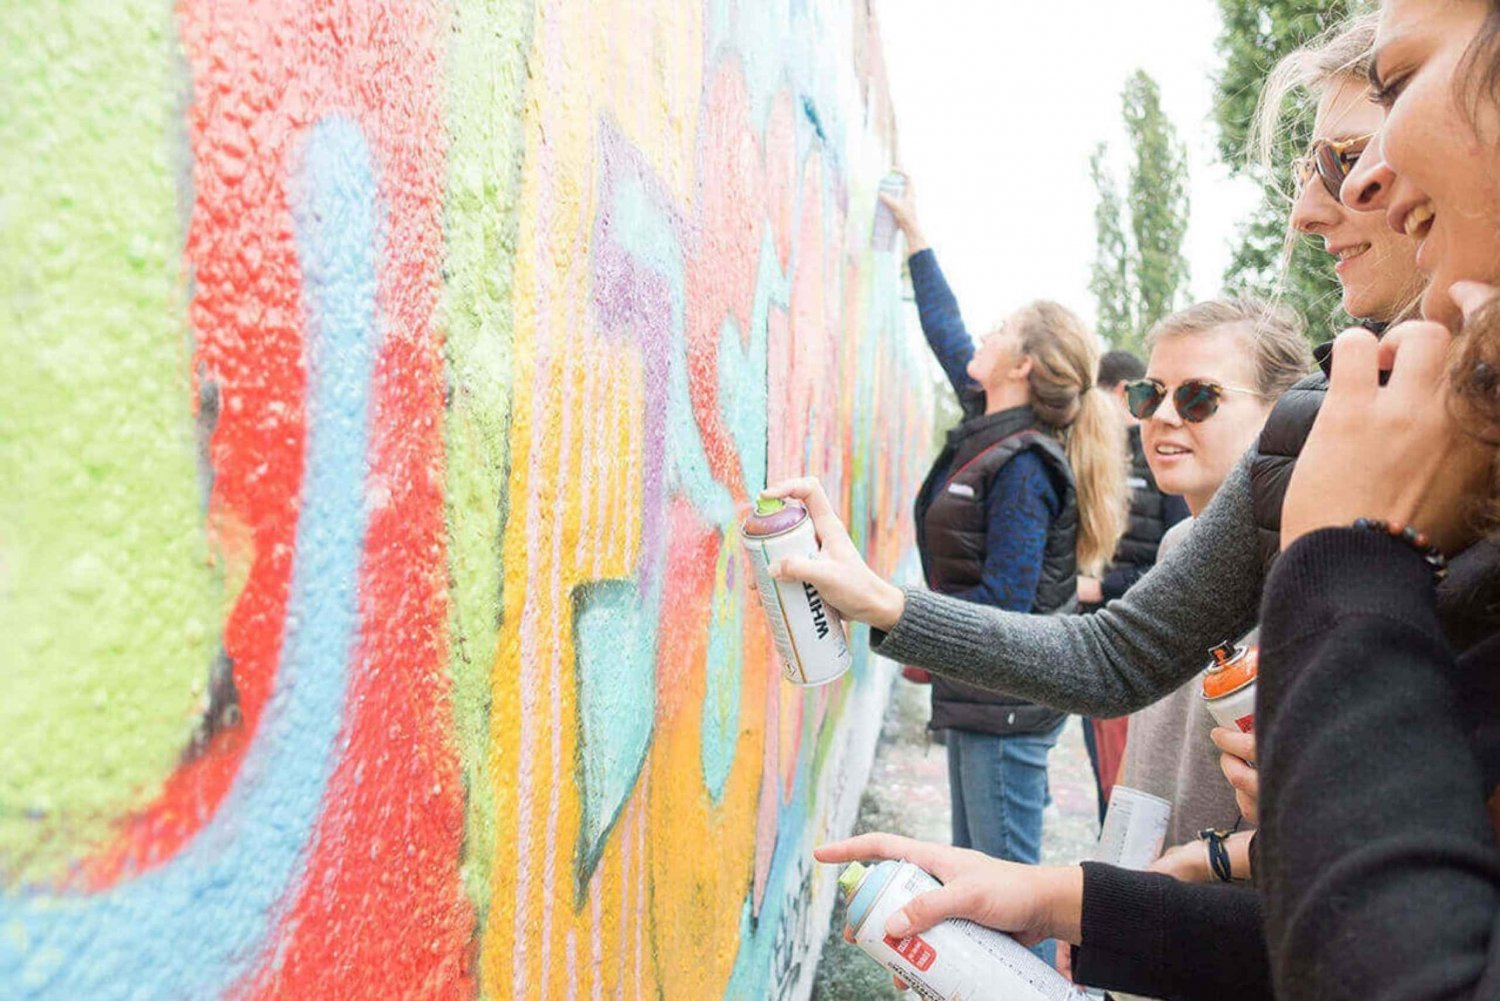 Berlin: Graffiti Workshop at the Berlin Wall